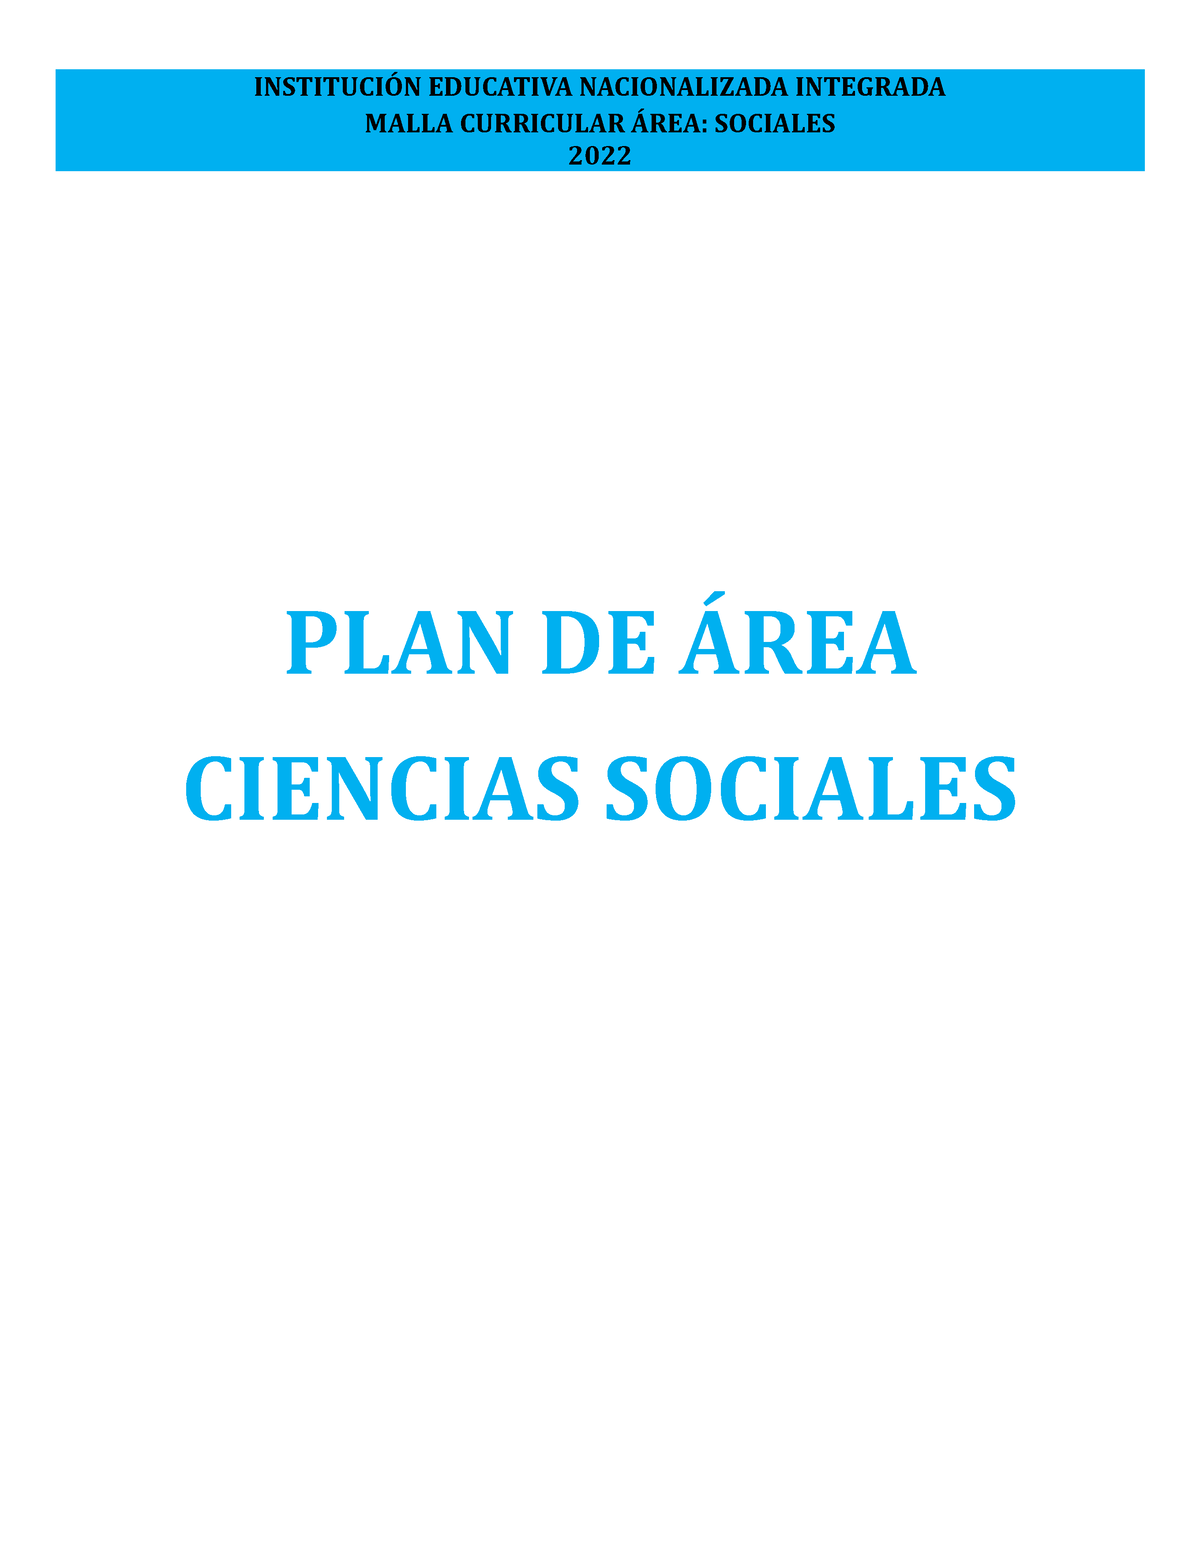 Plan De Area Ciencias Sociales Malla Curricular Área Sociales 2022 Plan De Área Ciencias 6474